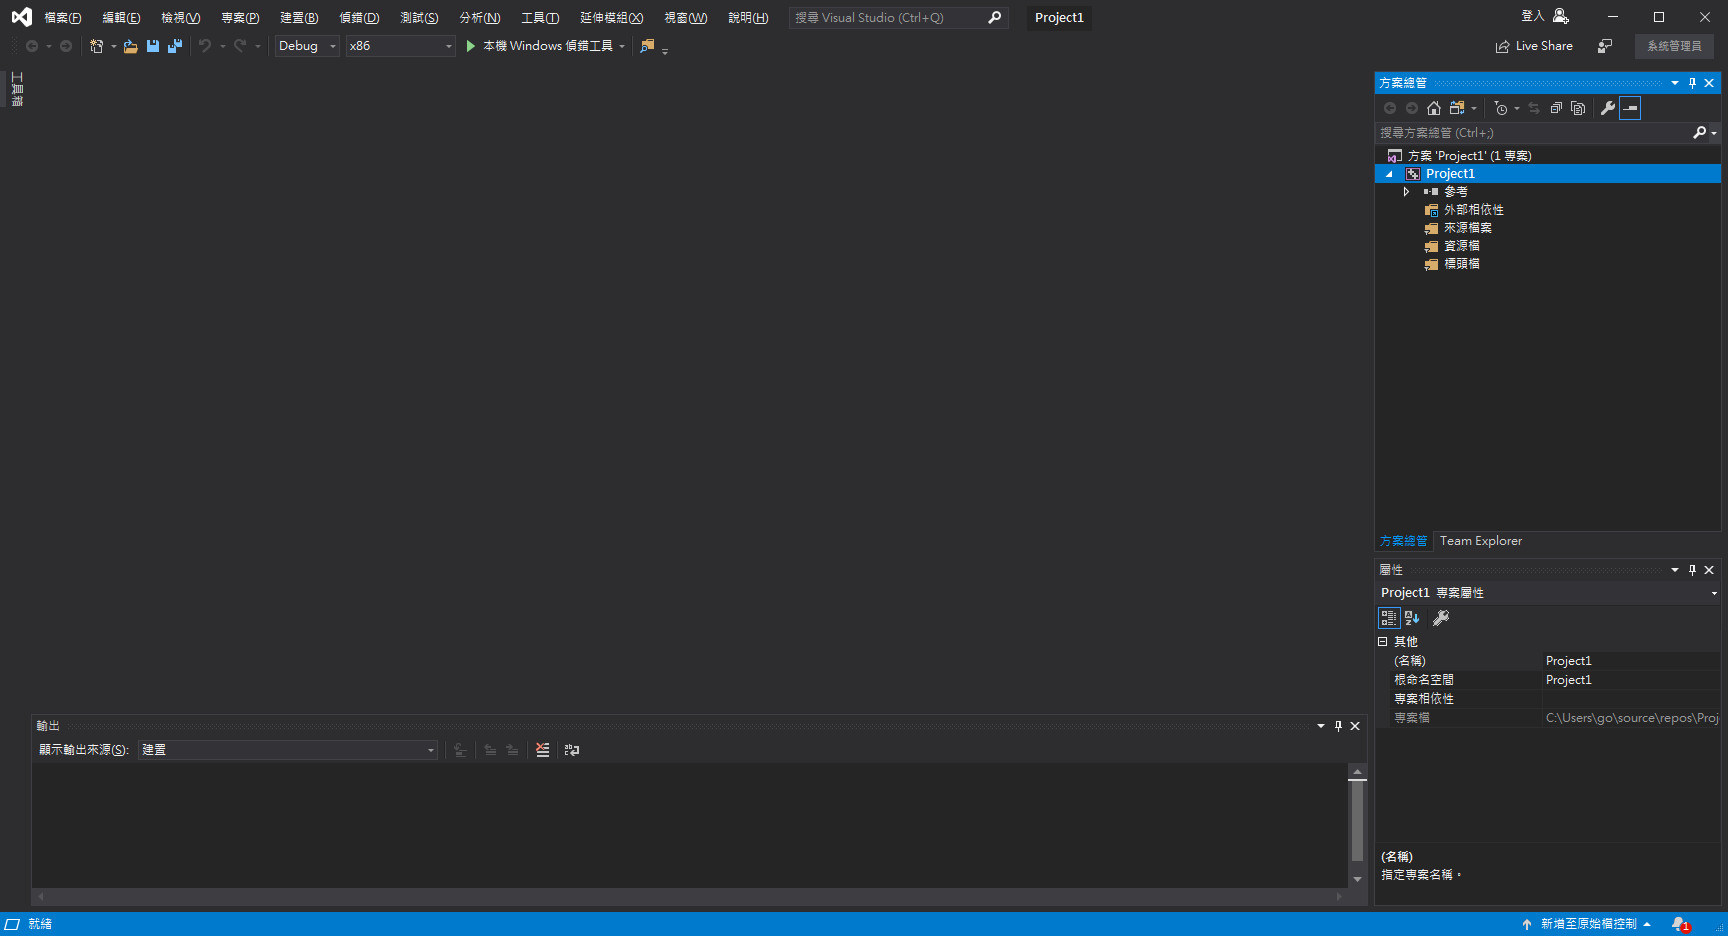 【問題】Visual Studio 2019 如何使用? @程式設計板 哈啦板 - 巴哈姆特